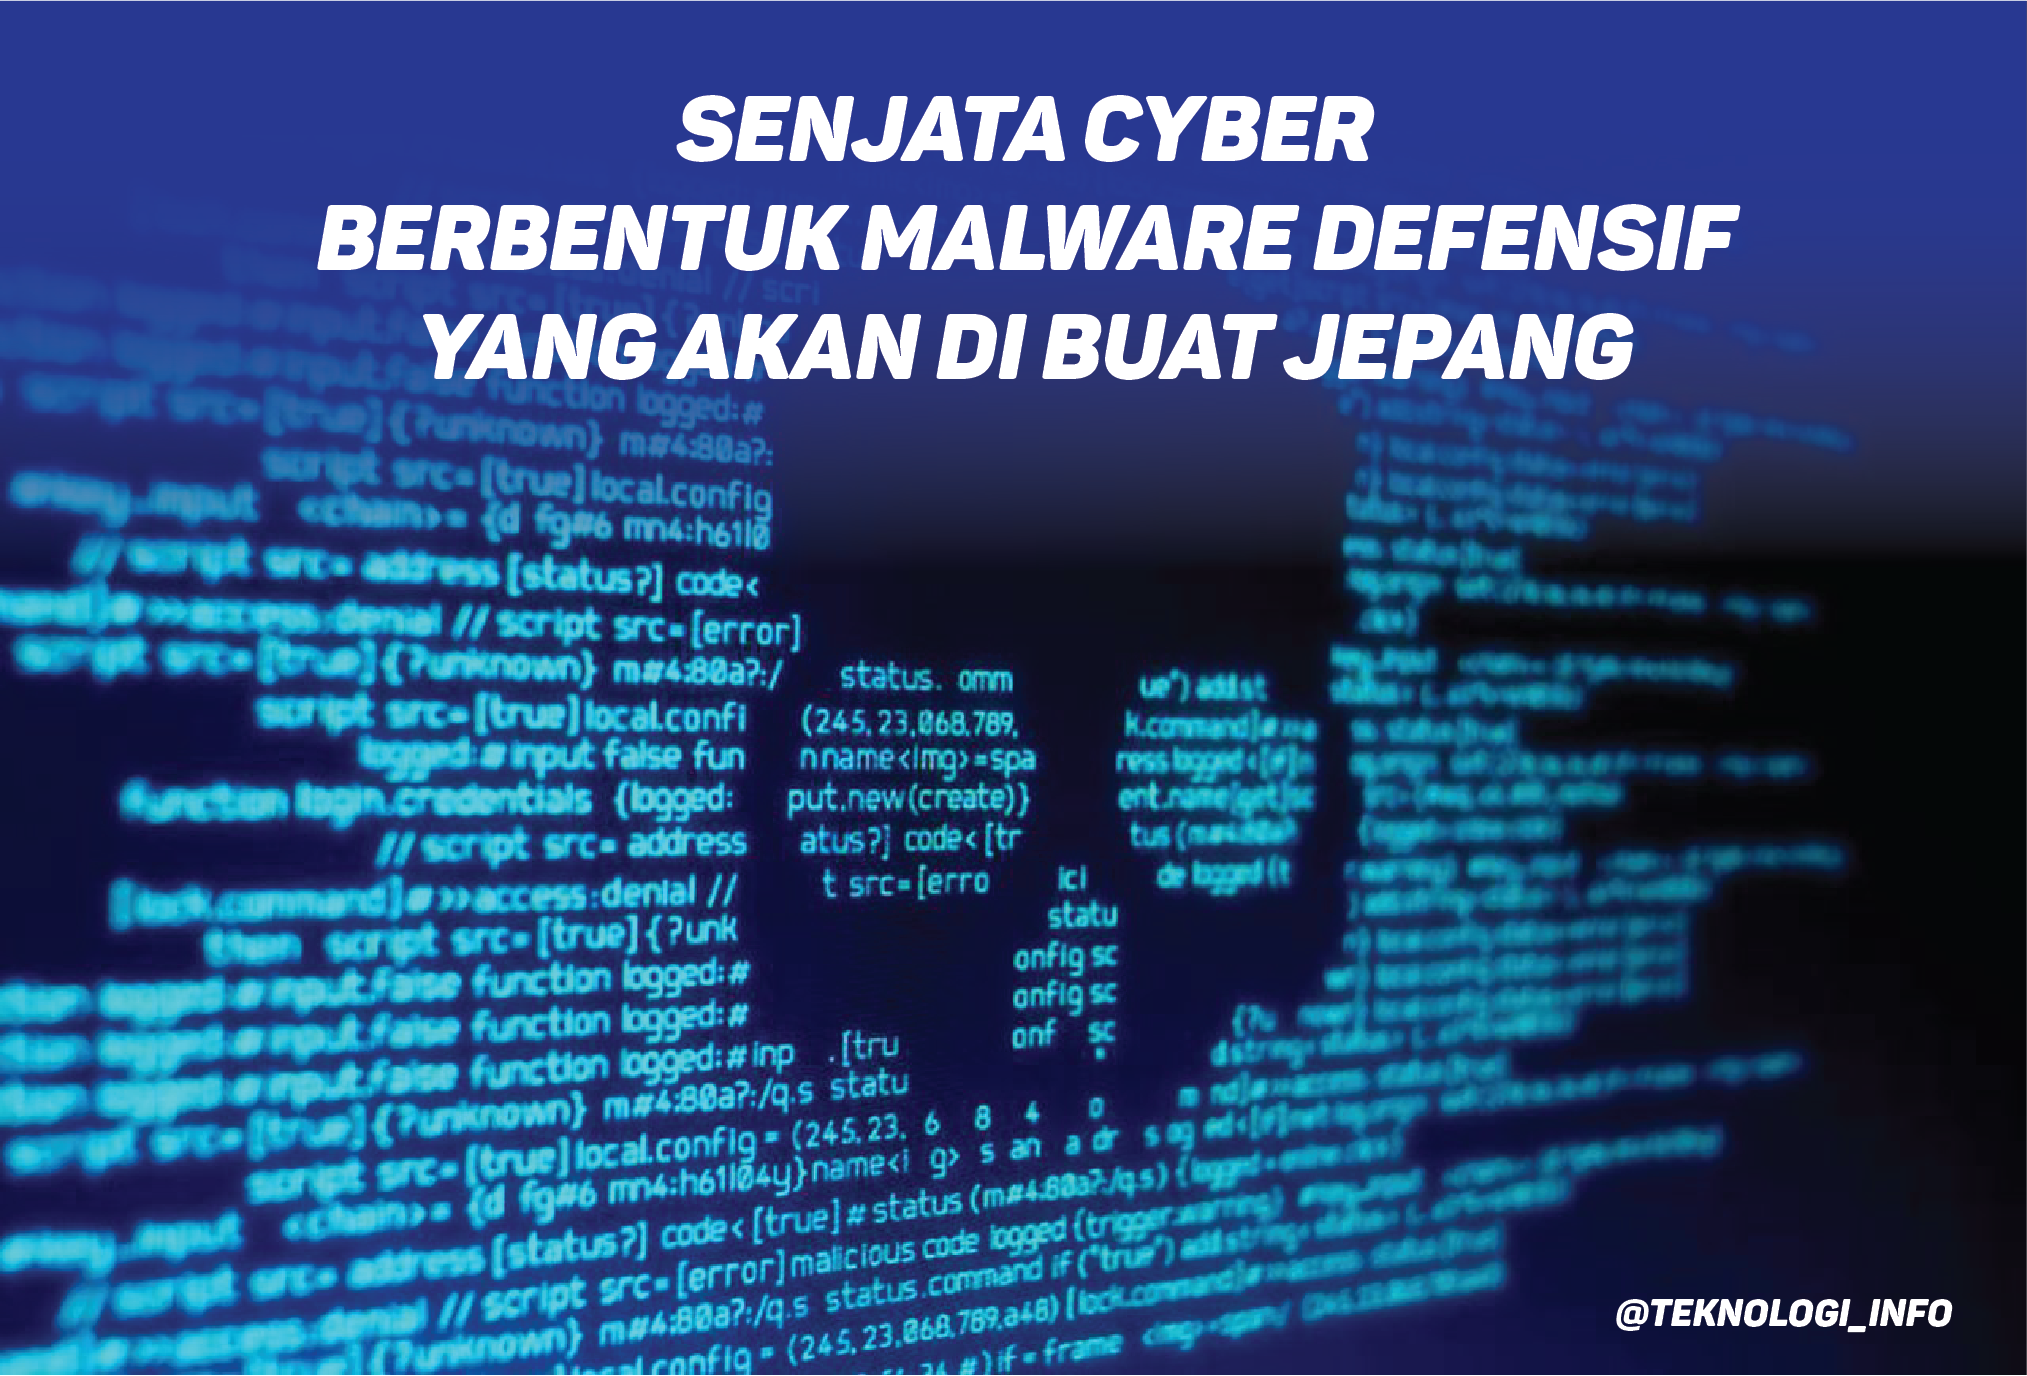 Senjata Cyber Berbentuk Malware Defensif yang akan di buat Jepang